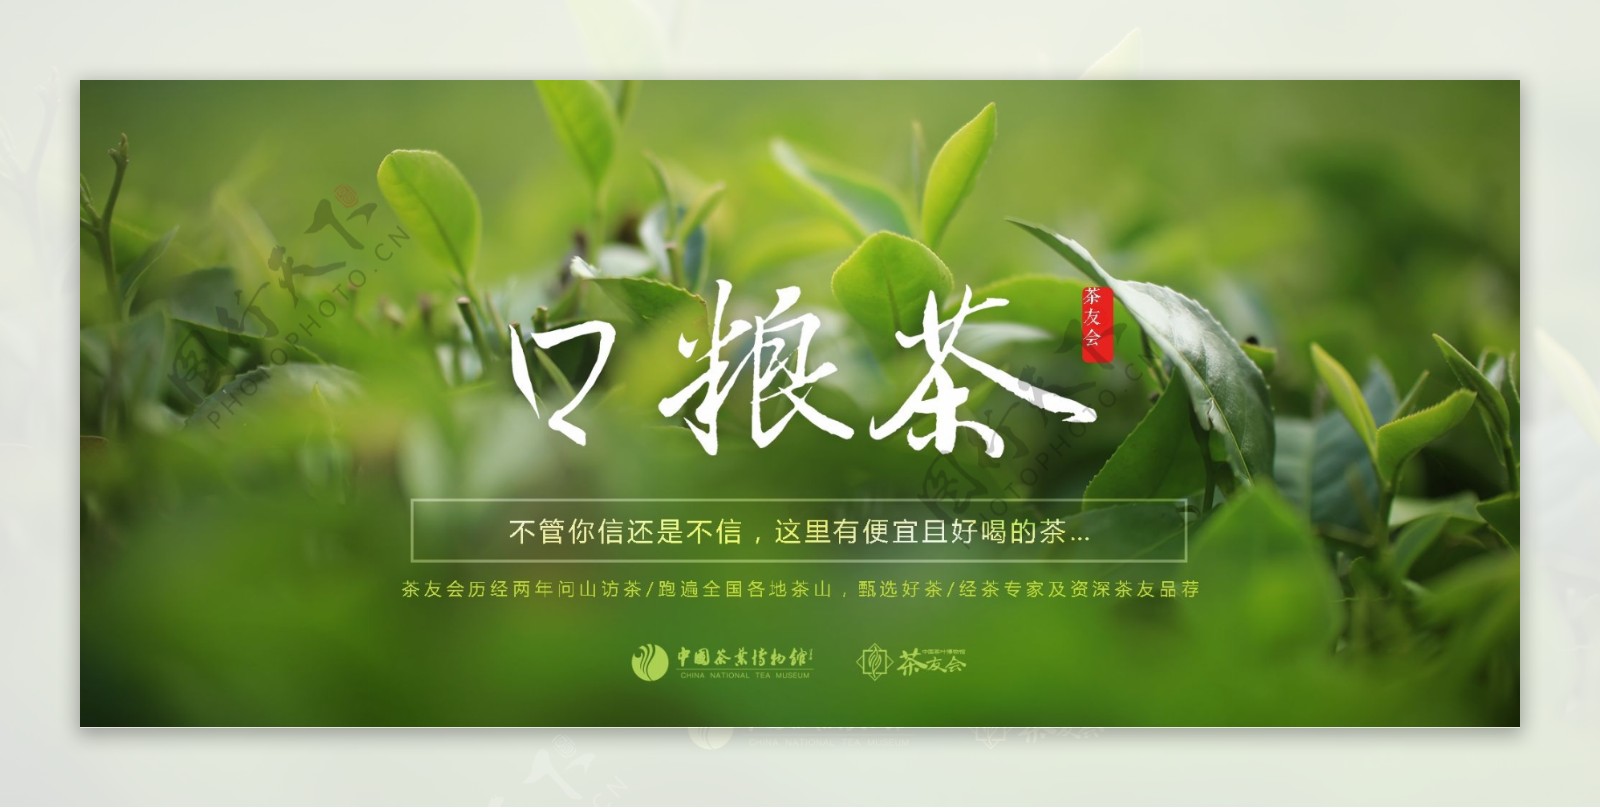 茶友会口粮茶网站海报设计